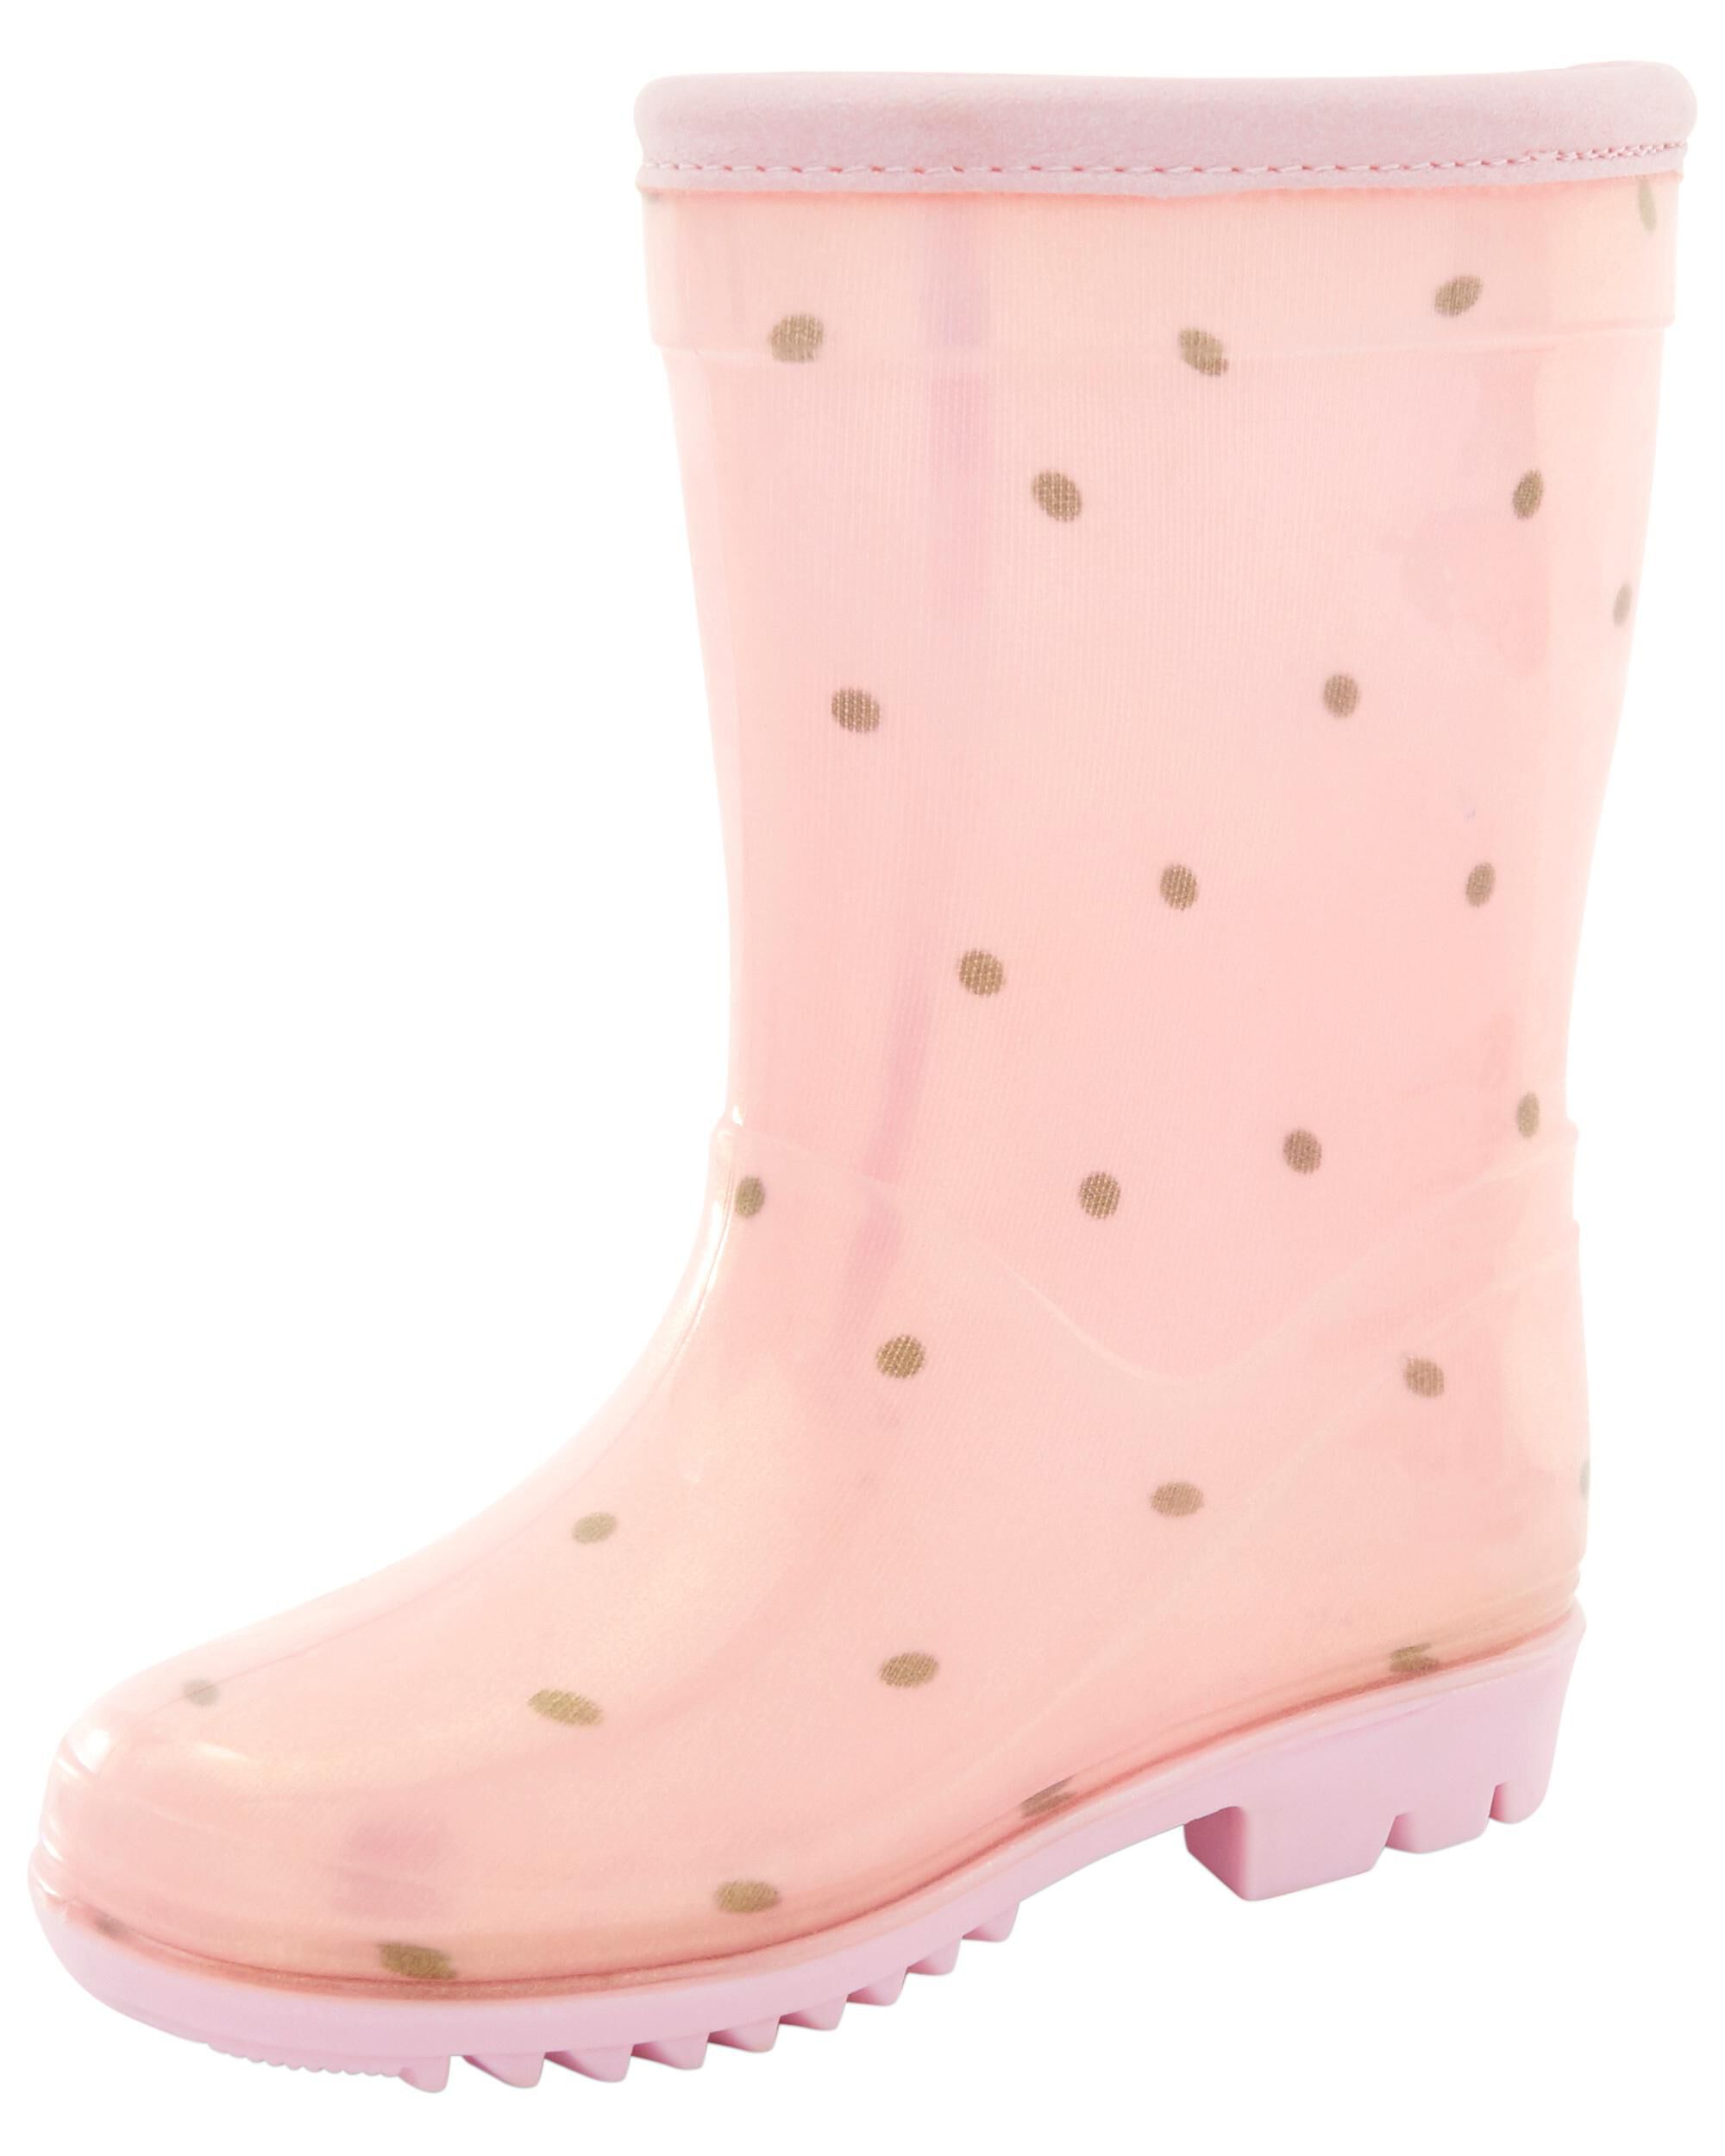 polka dot rain boots